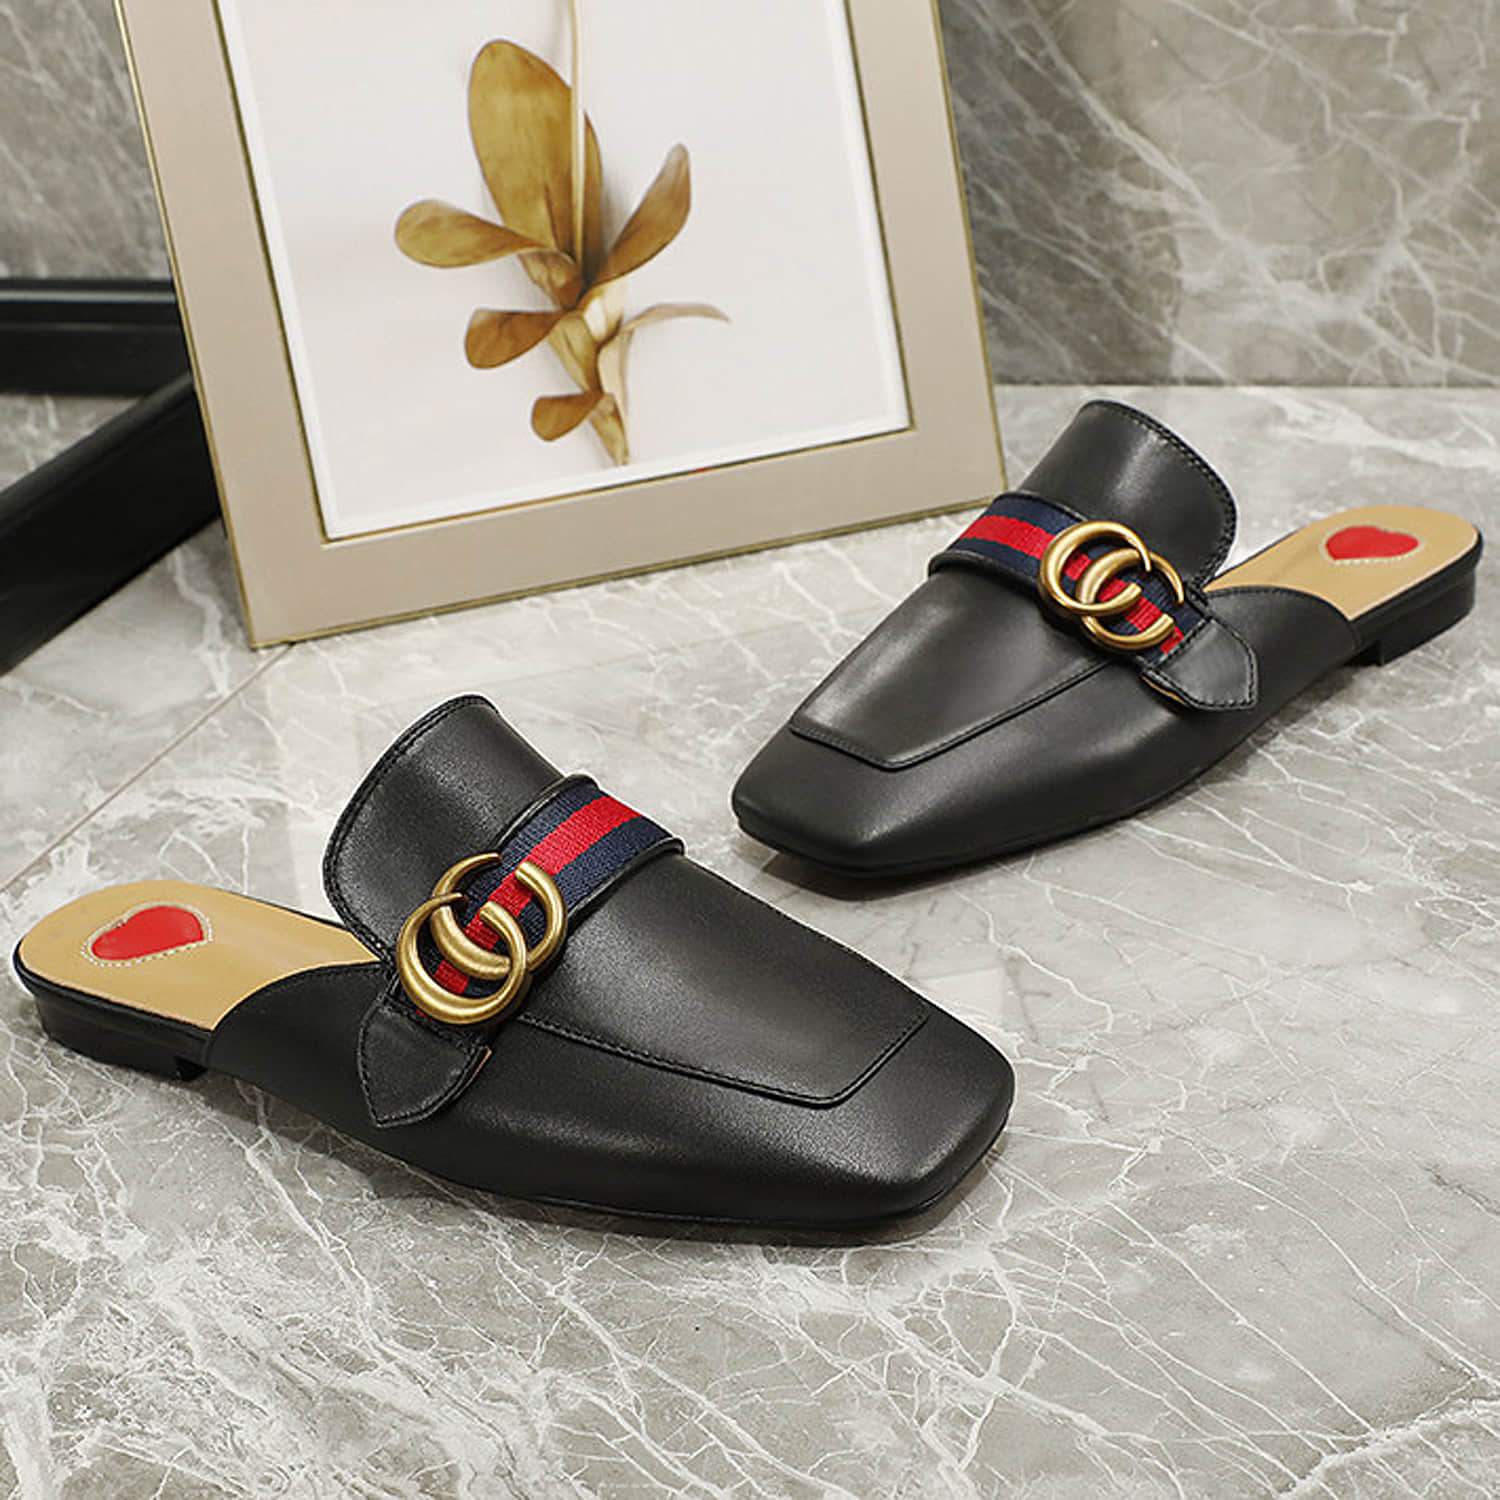 Leather-Slip-On-Backless-Flat-Slide-Slippers-Mules-designer